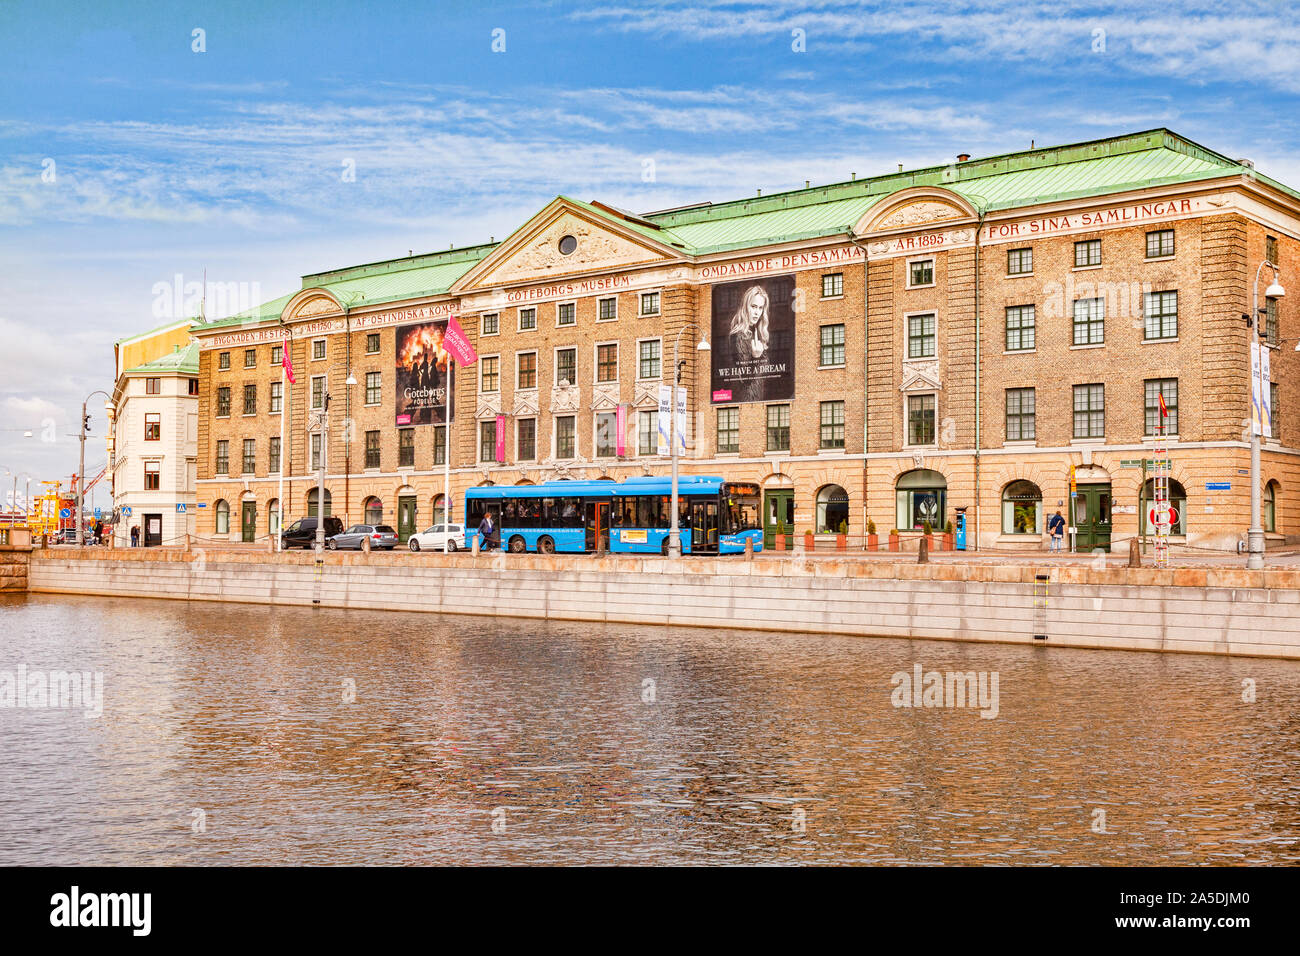 14 Septembre 2018 : Göteborg, Suède - Le Musée de la ville de Göteborg, à côté du canal, le port de Stora ia un musée d'histoire culturelle suédoise, à partir de la carte tim Banque D'Images